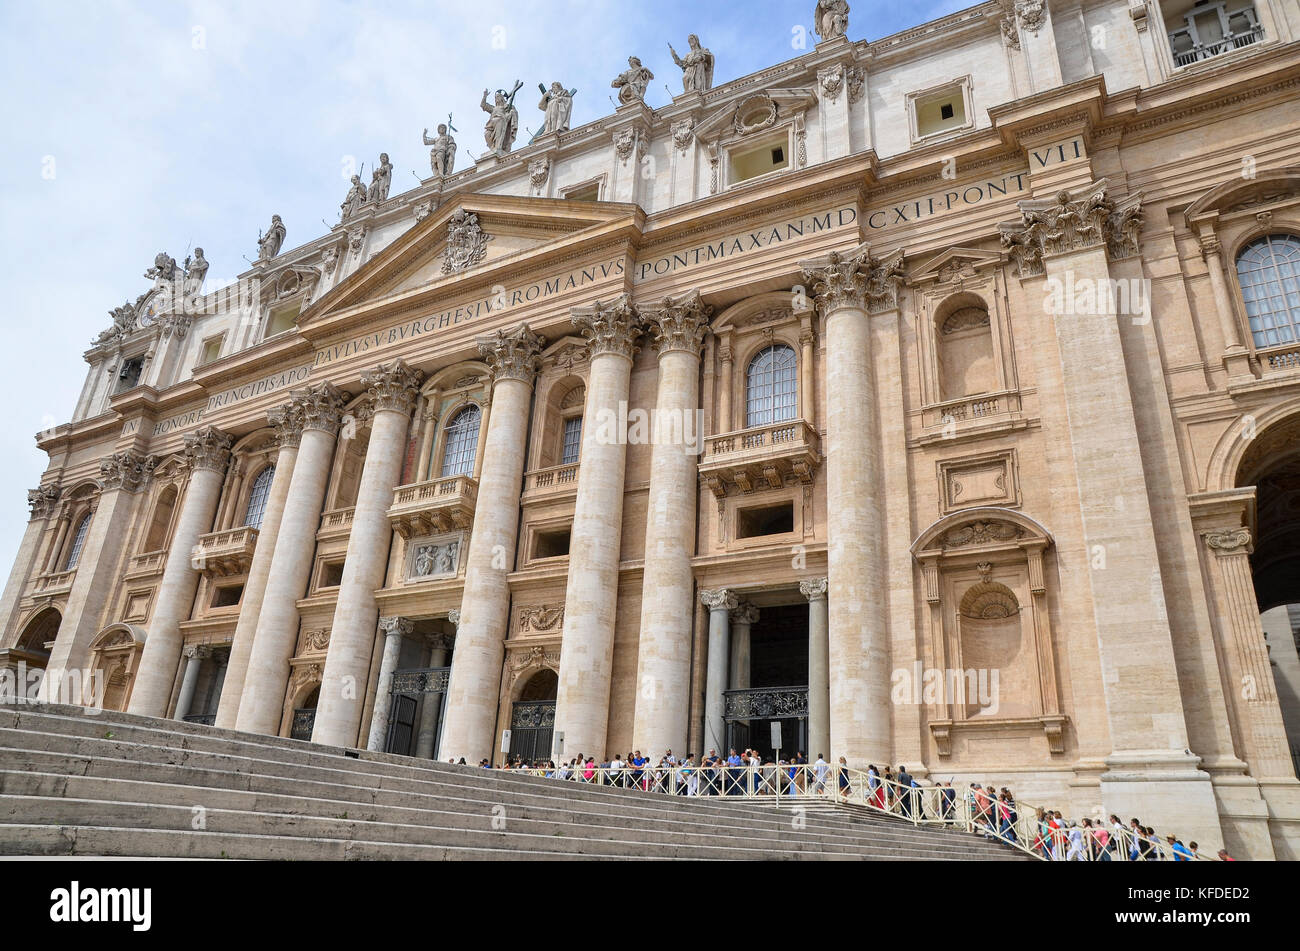 La facciata della storica Basilica di San Pietro, nel cuore di Piazza San Pietro e la Città del Vaticano a Roma. Foto Stock